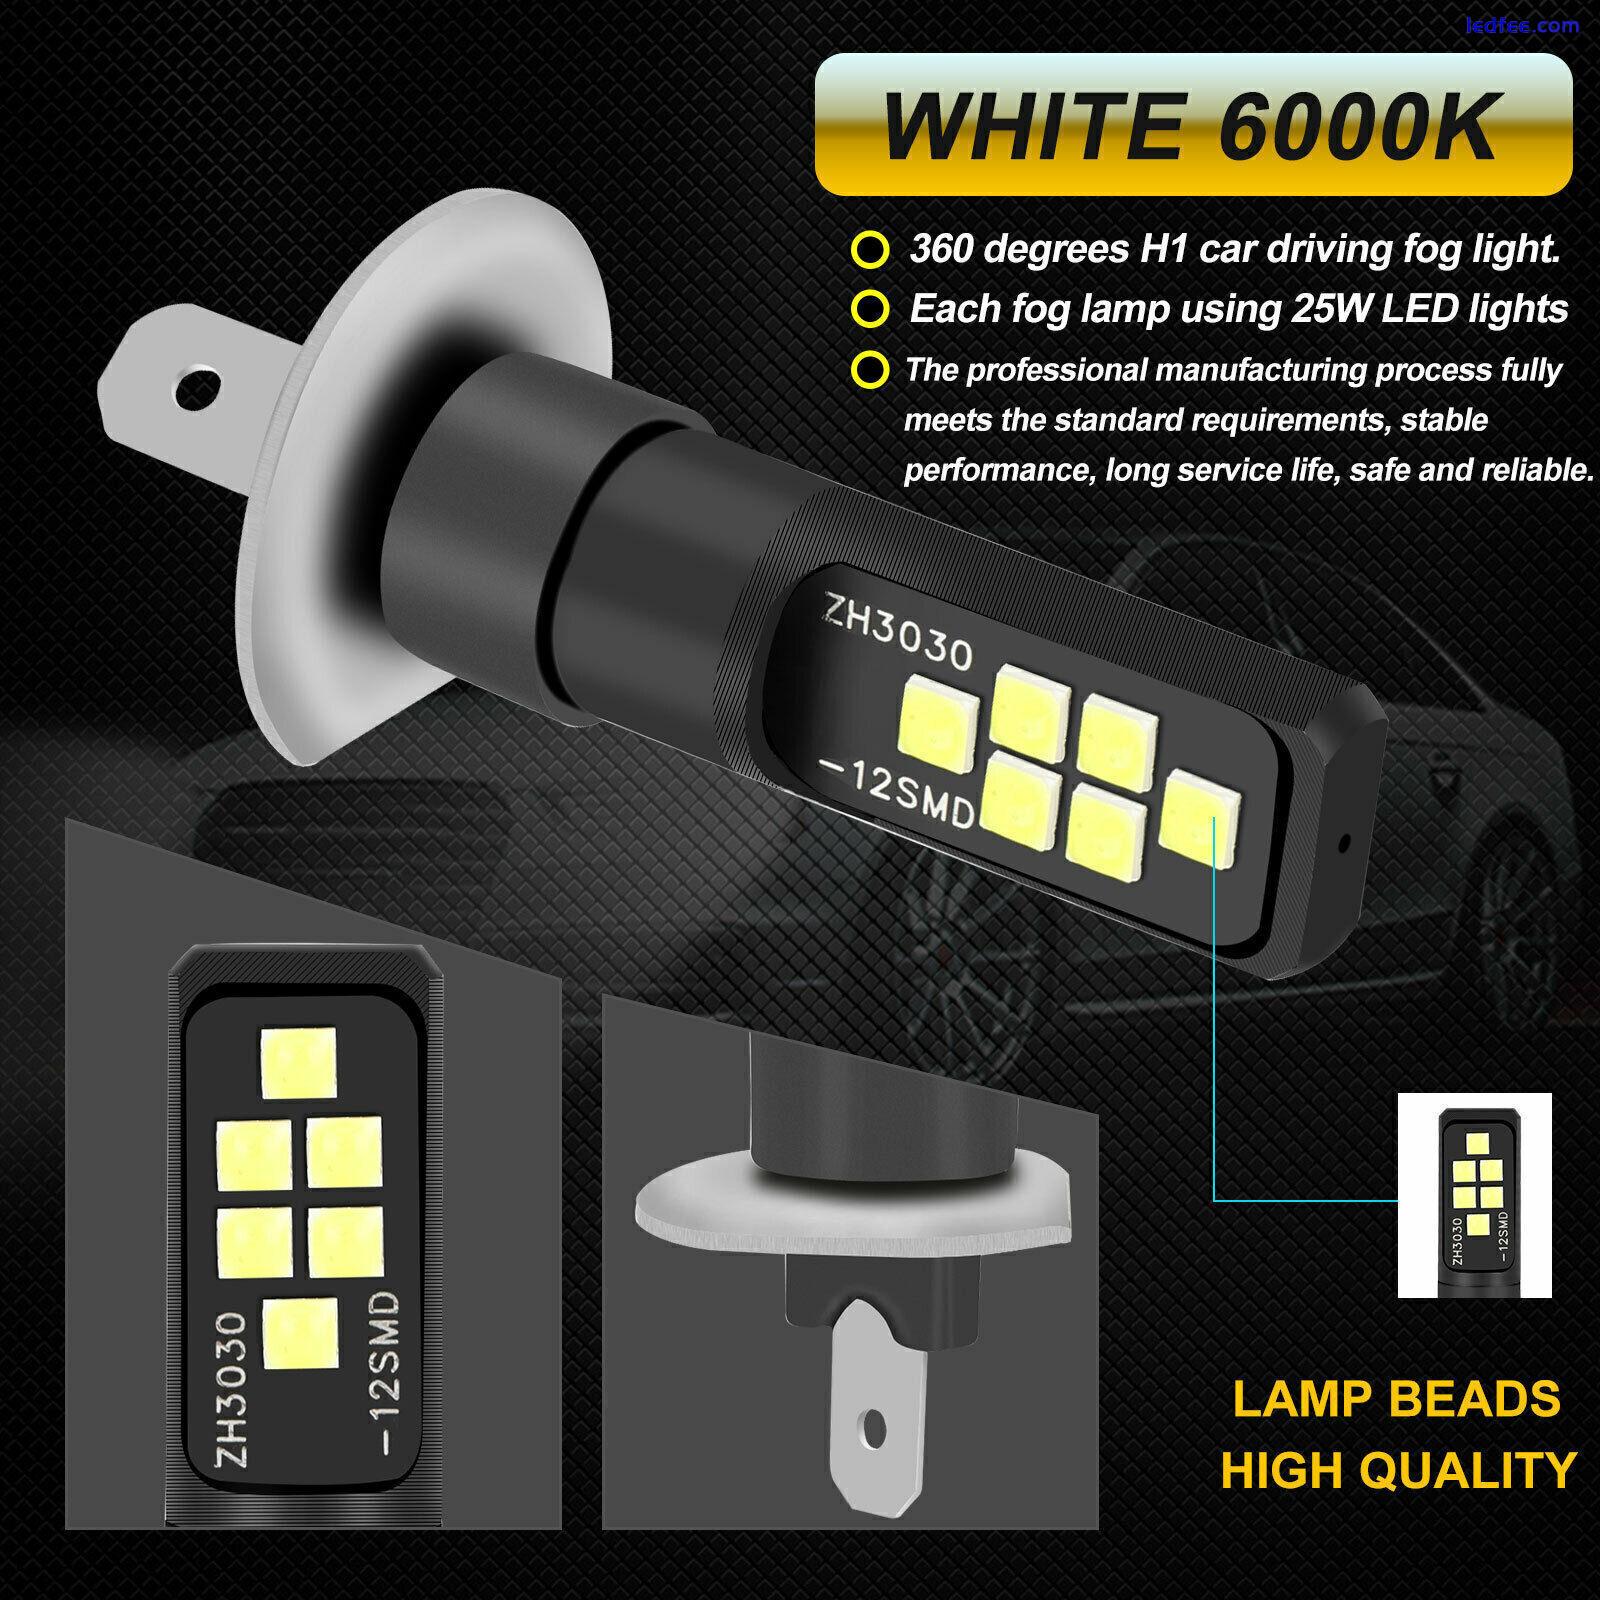 2x H1 Super White 6000K LED Headlight Fog Driving Bulbs Kit High Low Beam Lamps 1 